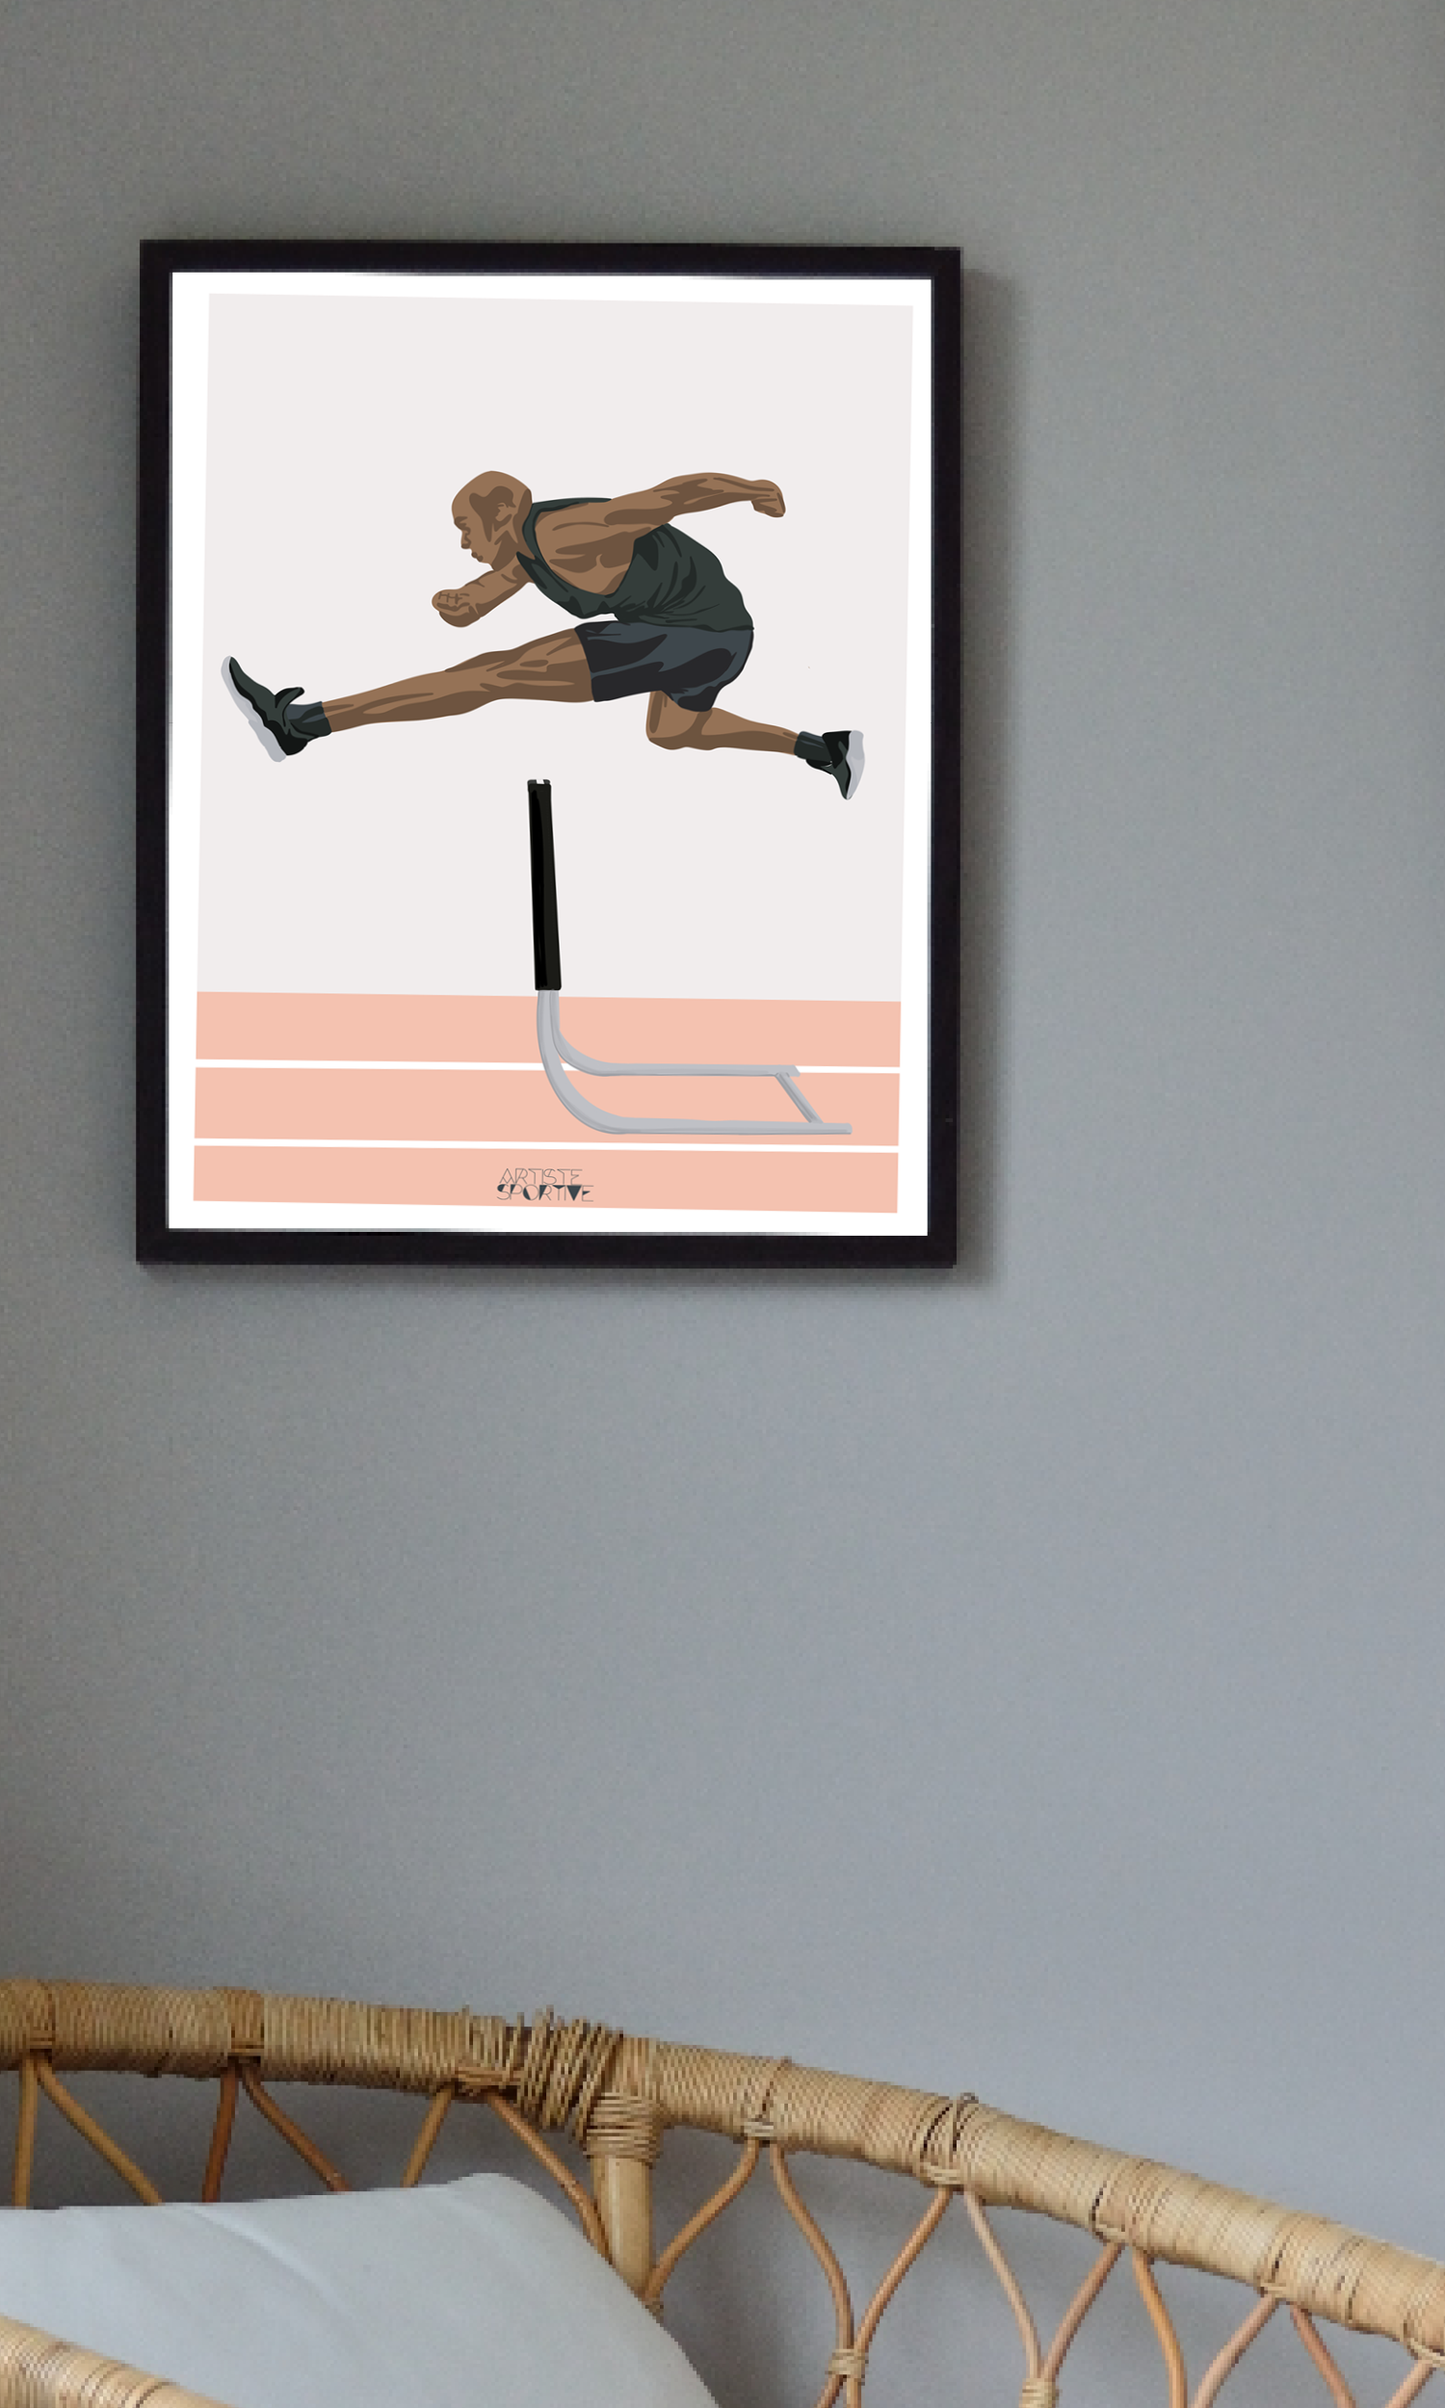 Affiche athlétisme "Saut haie homme"